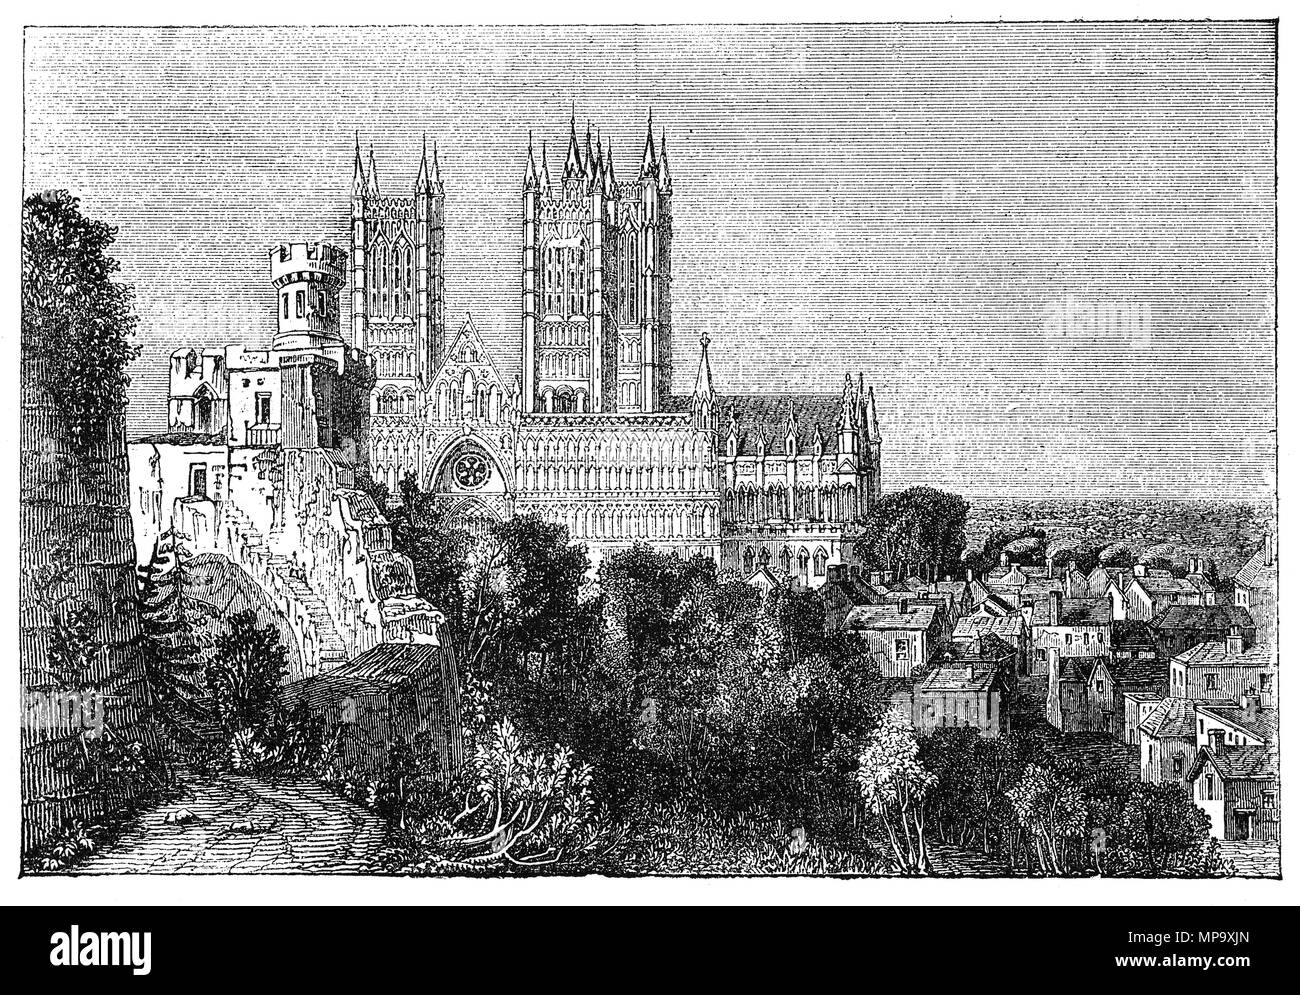 La Cathédrale de Lincoln ou l'église cathédrale de la Sainte Vierge Marie de Lincoln, et parfois cathédrale St Mary à Lincoln, en Angleterre avec les murs de château de Lincoln au premier plan. La construction a commencé en 1088 et continué en plusieurs phases tout au long de la période médiévale. C'était le bâtiment le plus haut du monde pendant un moment. Le château est un château normand construit au cours de la fin du xie siècle par Guillaume le Conquérant sur le site d'une forteresse romaine. C'est l'un des deux châteaux en Angleterre qui fut utilisé comme Prison et palais de justice dans les temps modernes. Banque D'Images